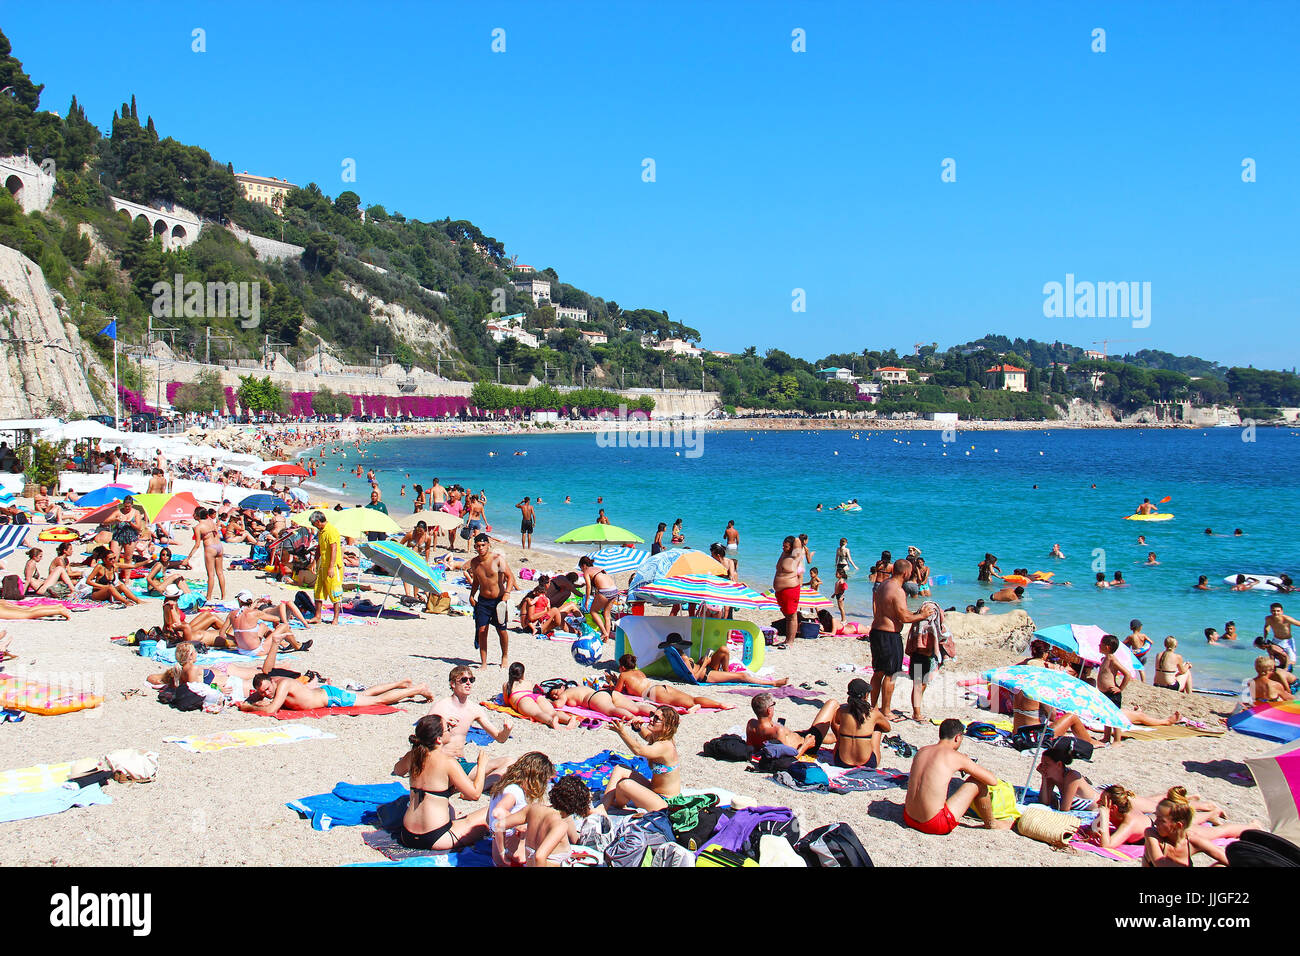 VILLEFRANCHE-SUR-MER, Francia - 26 luglio 2016: affollata estate spiaggia sul Mar Mediterraneo nei pressi di Nizza Cote d'Azur, costa azzurra Foto Stock